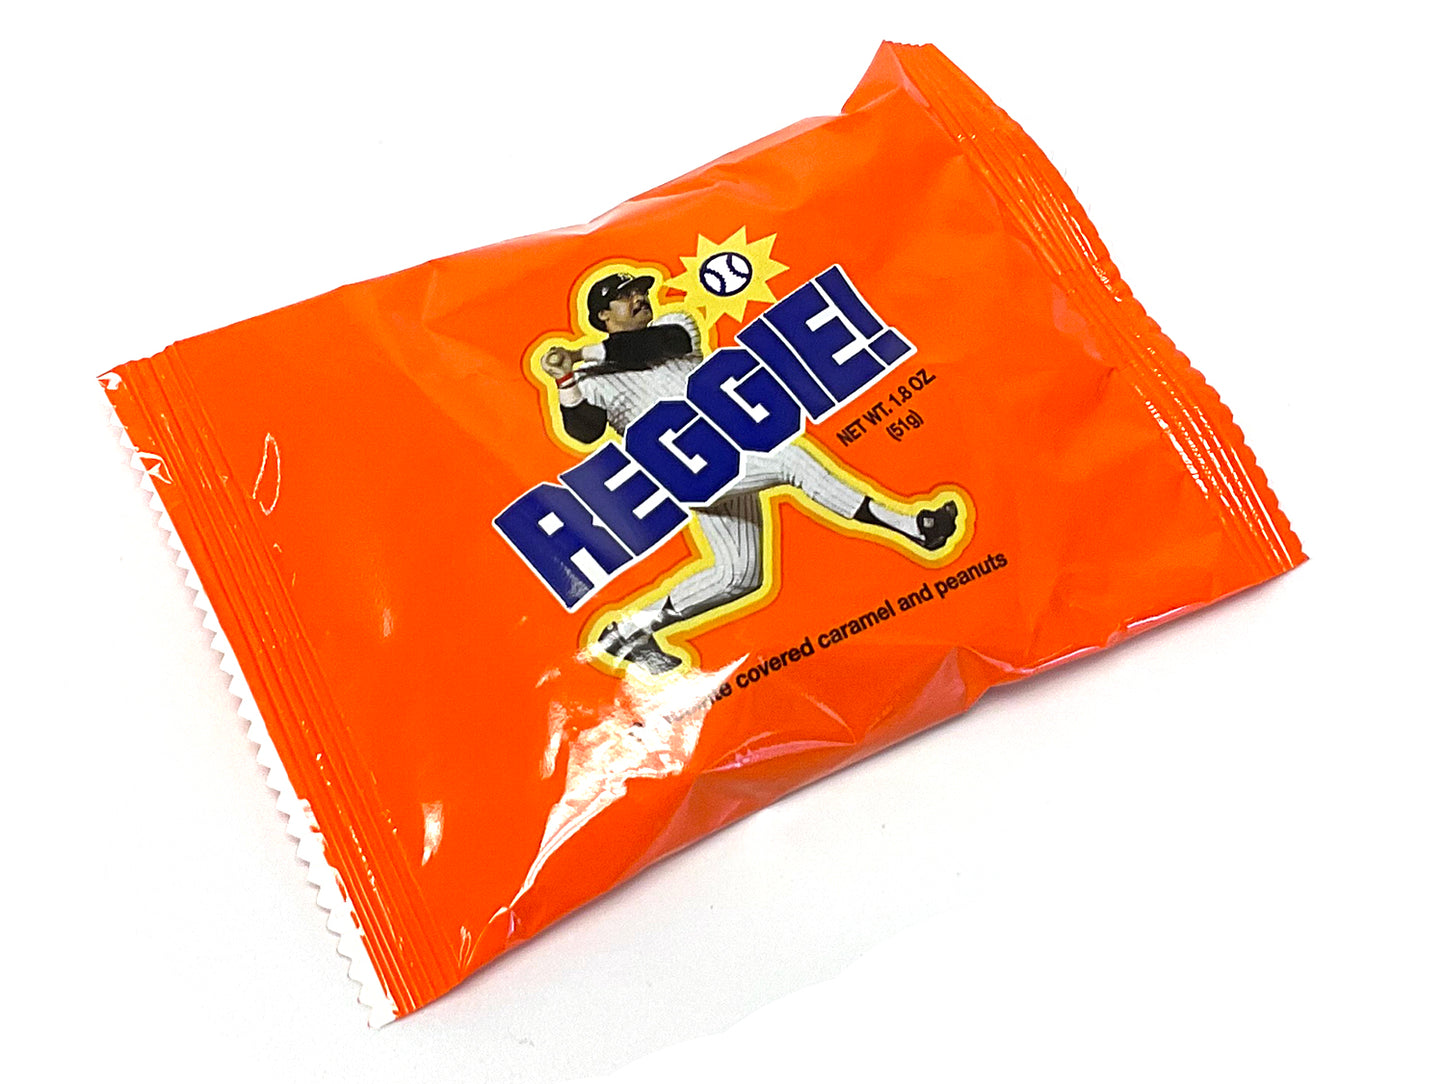 Reggie Candy Bar - 1.8 oz 